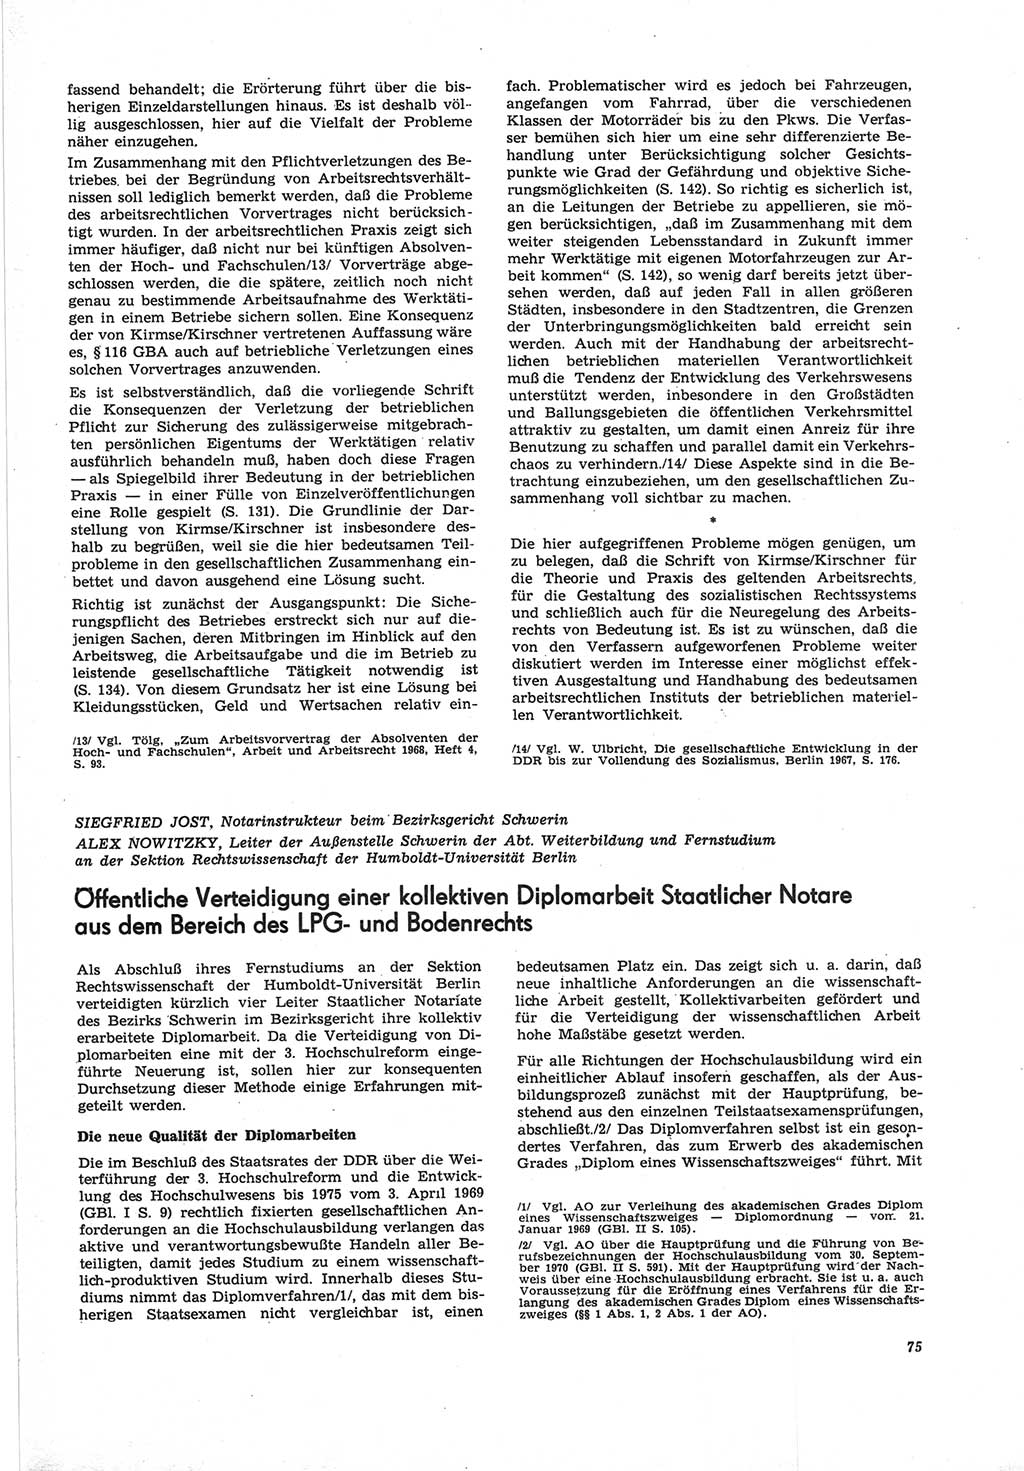 Neue Justiz (NJ), Zeitschrift für Recht und Rechtswissenschaft [Deutsche Demokratische Republik (DDR)], 25. Jahrgang 1971, Seite 75 (NJ DDR 1971, S. 75)